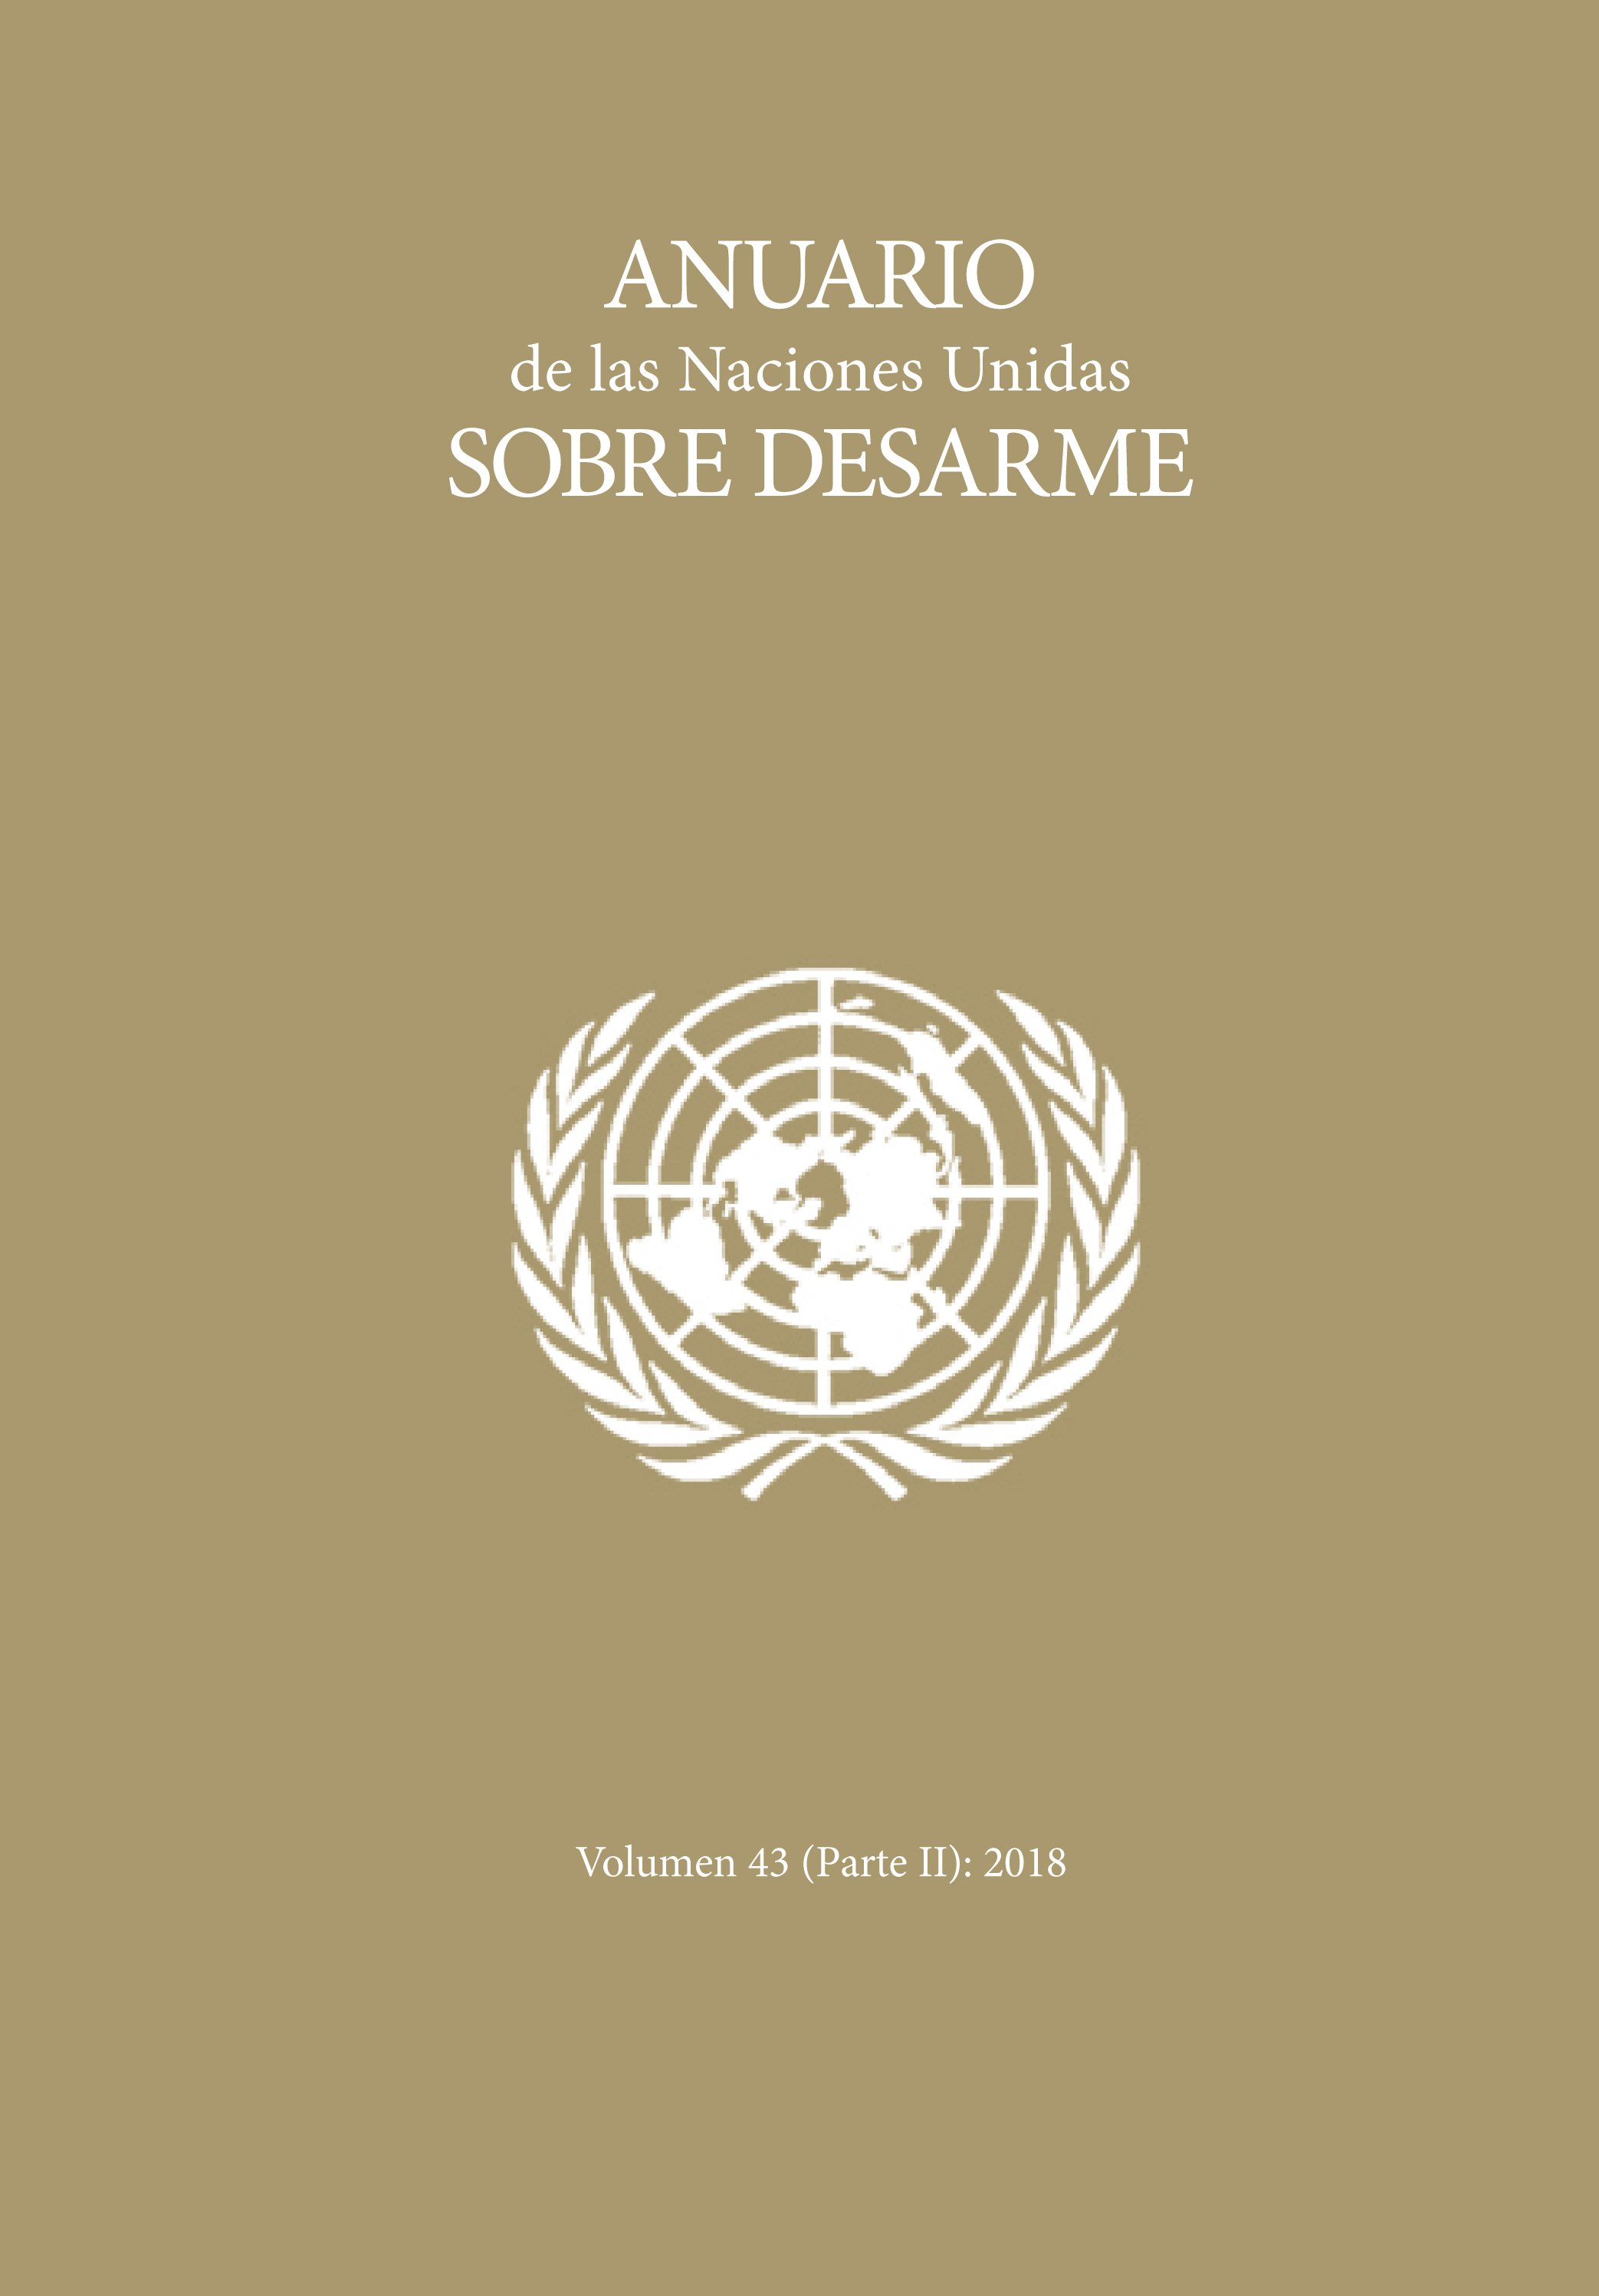 image of Anuario de las Naciones Unidas sobre desarme 2018: parte II